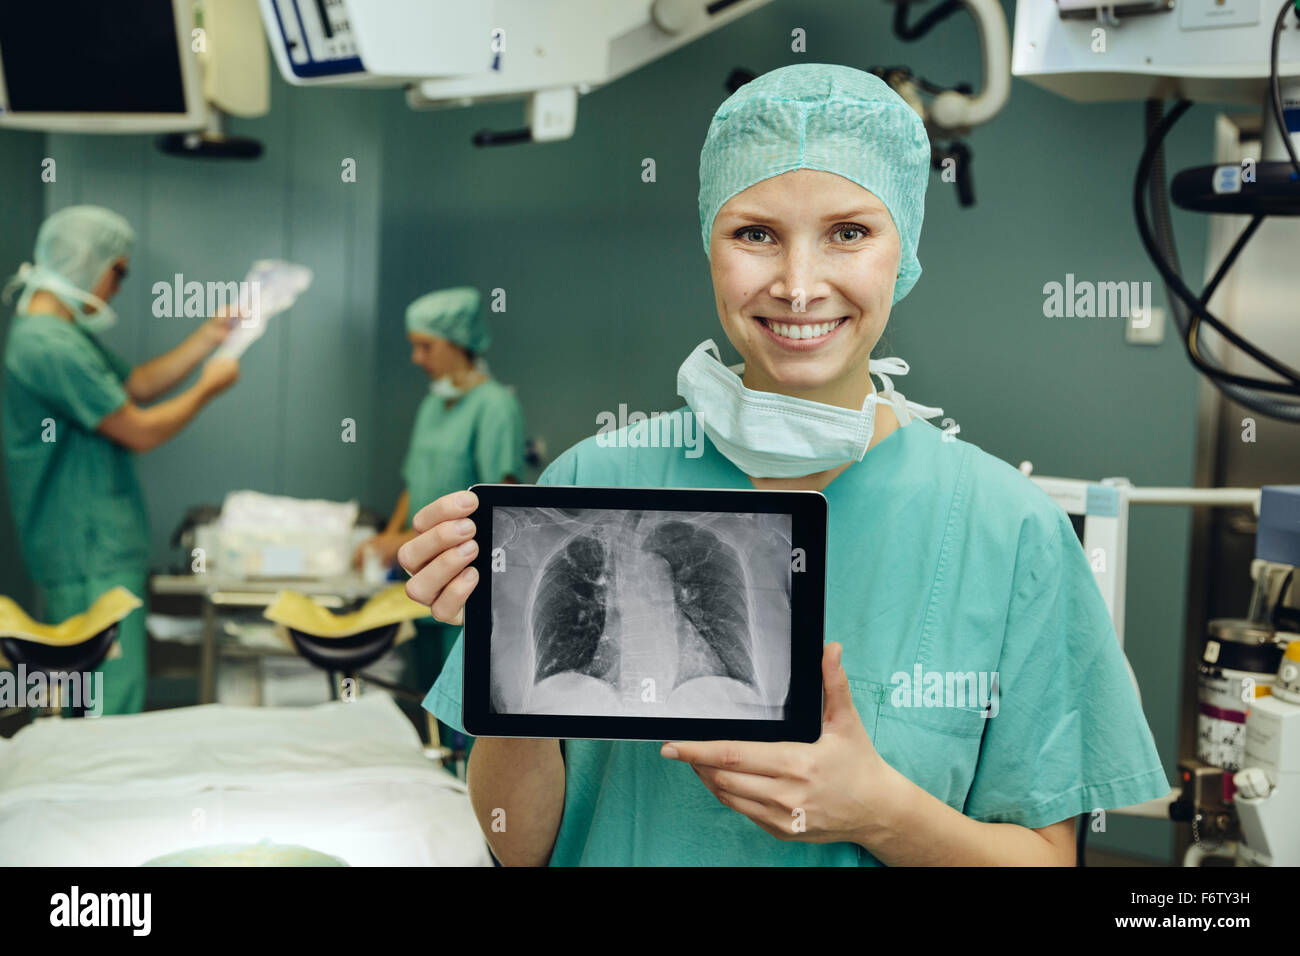 Female chirurgien en salle d'opération tenant une tablette numérique avec un thorax x-ray image Banque D'Images